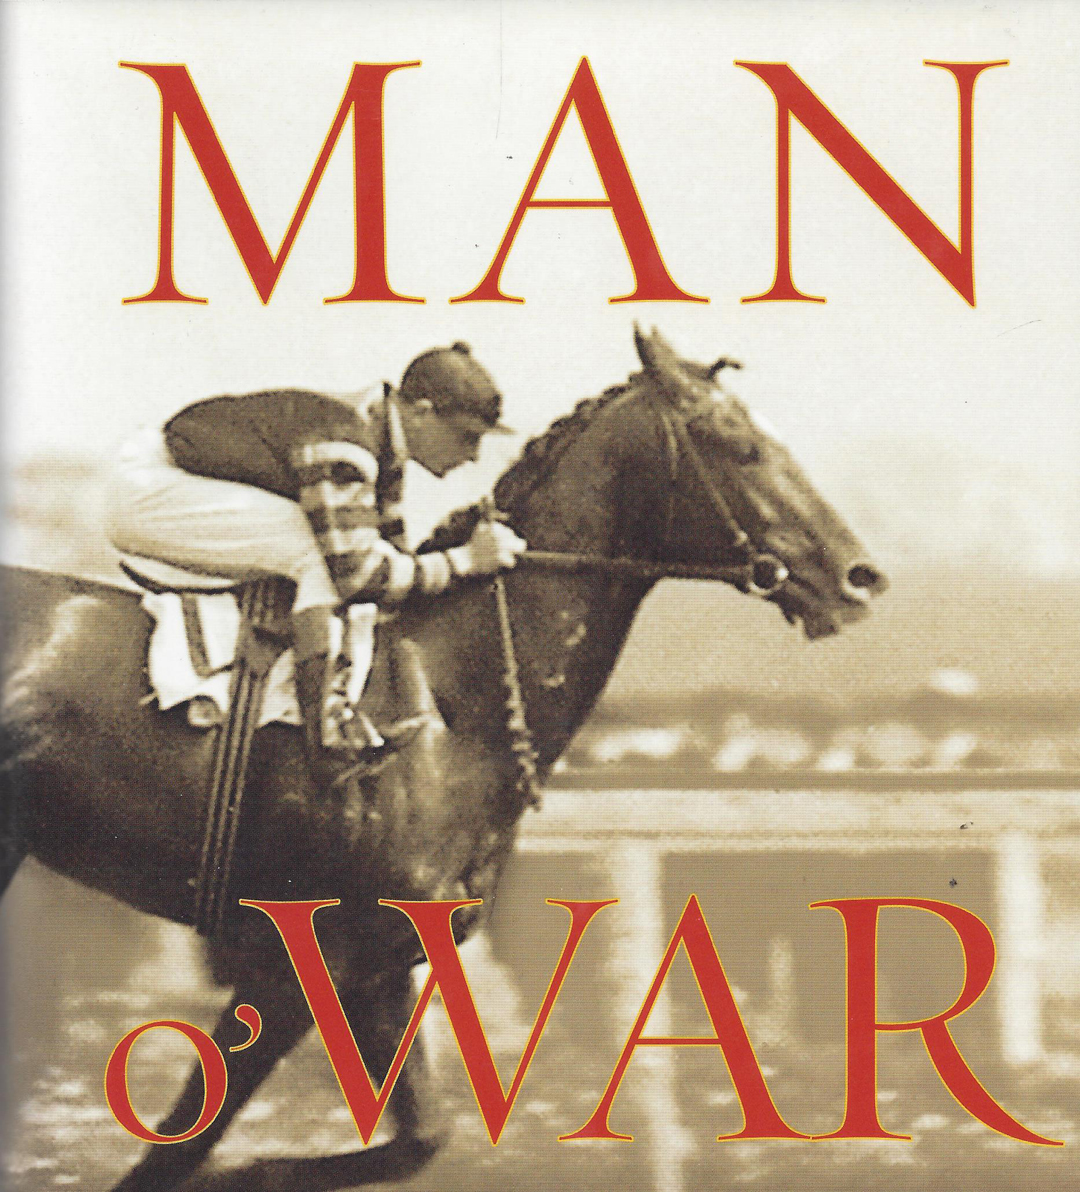 Man O' War. How good was he?